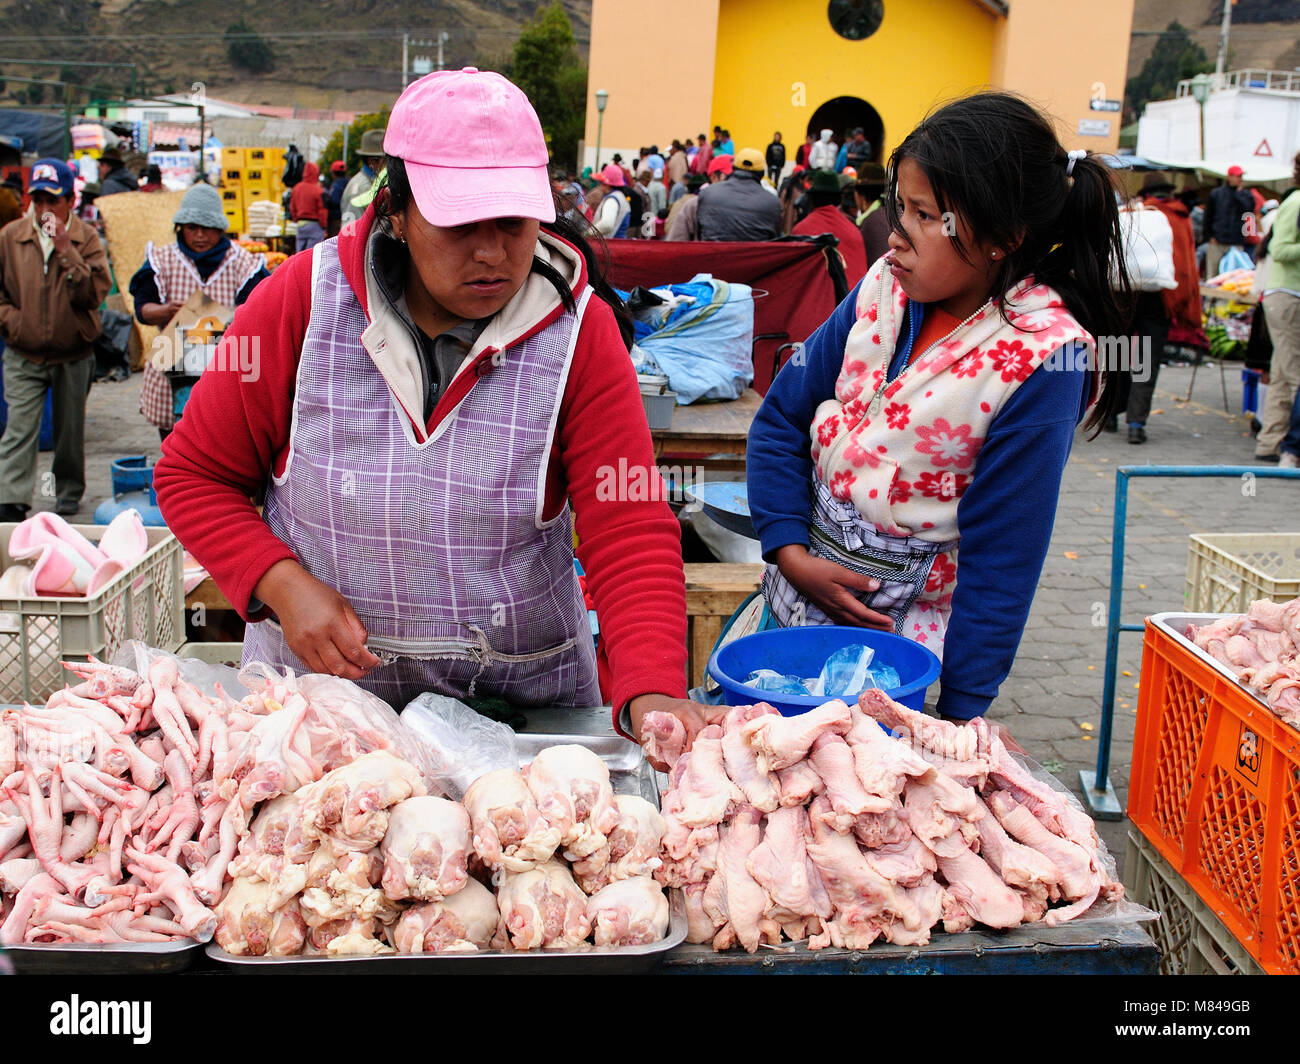 ECUADOR, PUJILI - 11 agosto 2012; indigeni donna ecuadoriana in vestiti nazionali di vendita chikcen fresco su un mercato nel villaggio di Pujili Foto Stock